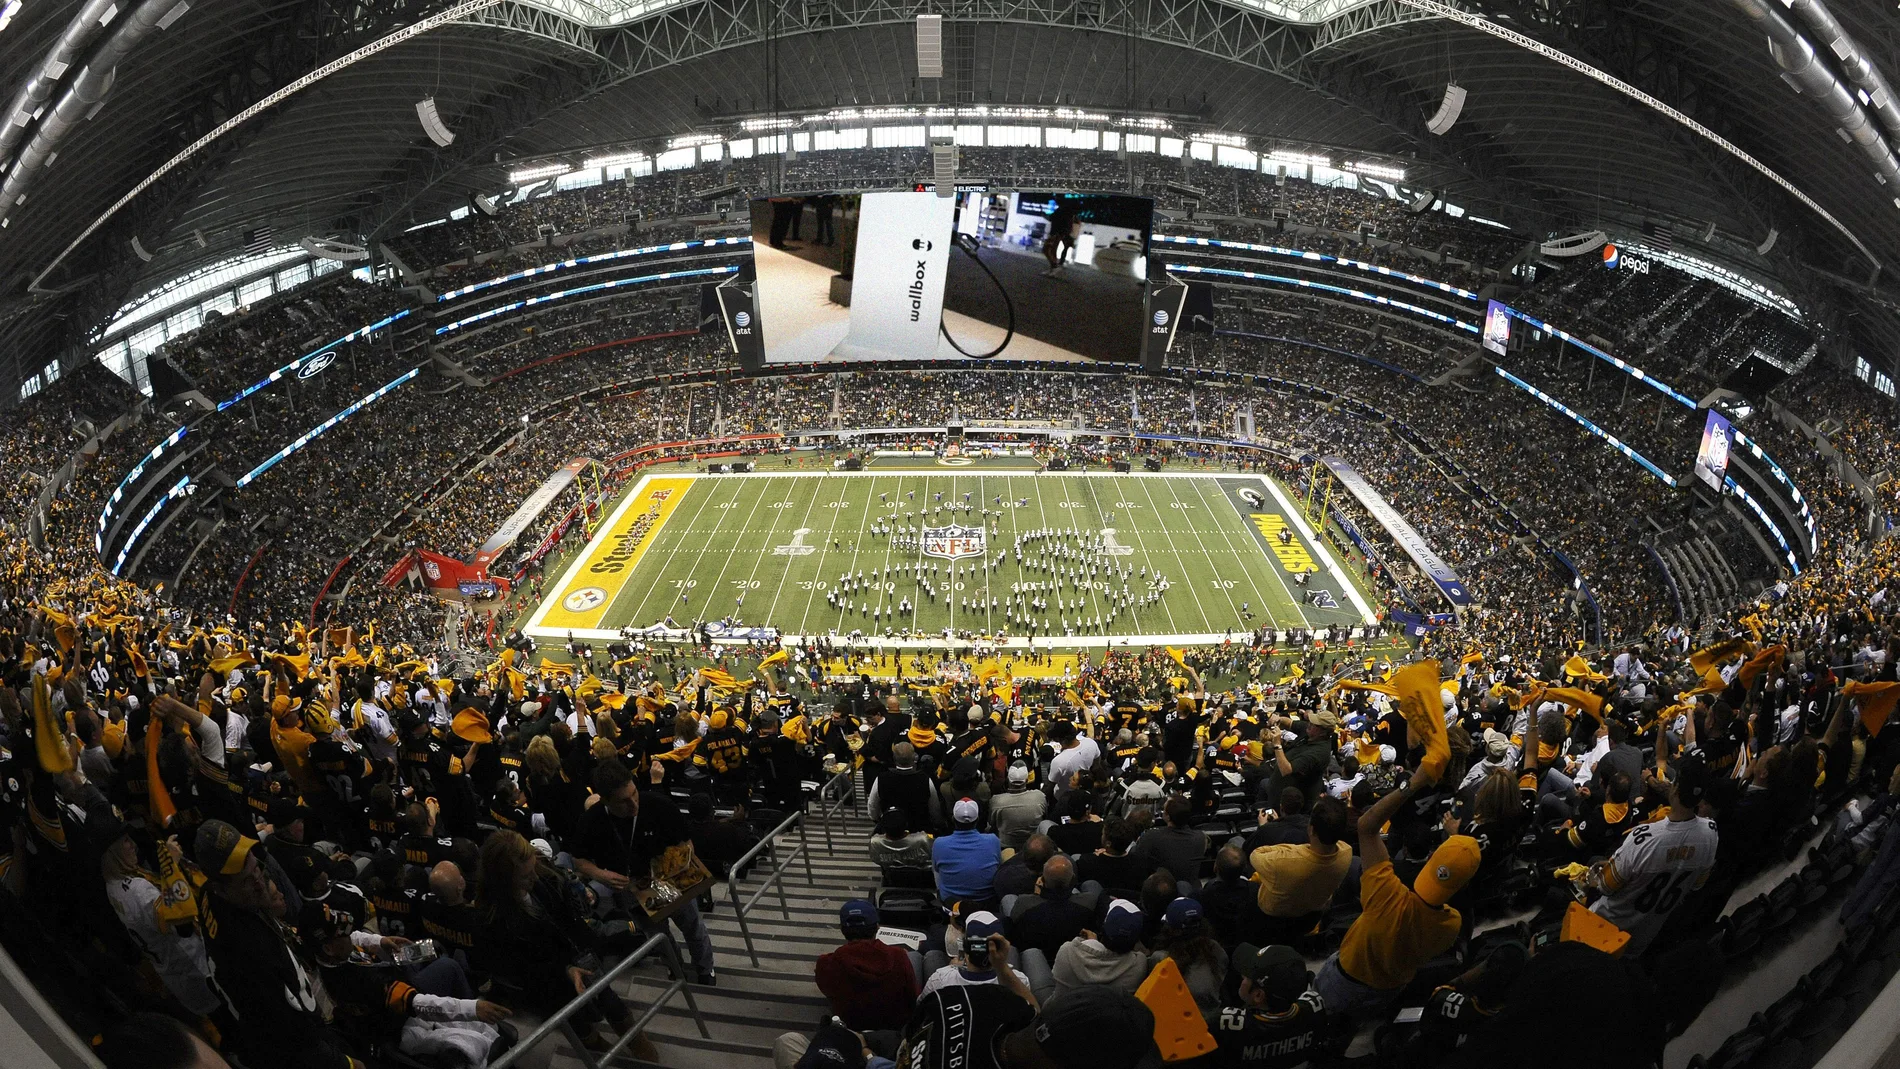 La Super Bowl es el mayor evento deportivo de Estados Unidos. Con una audiencia de más de 100 millones de espectadores en todo el mundo,